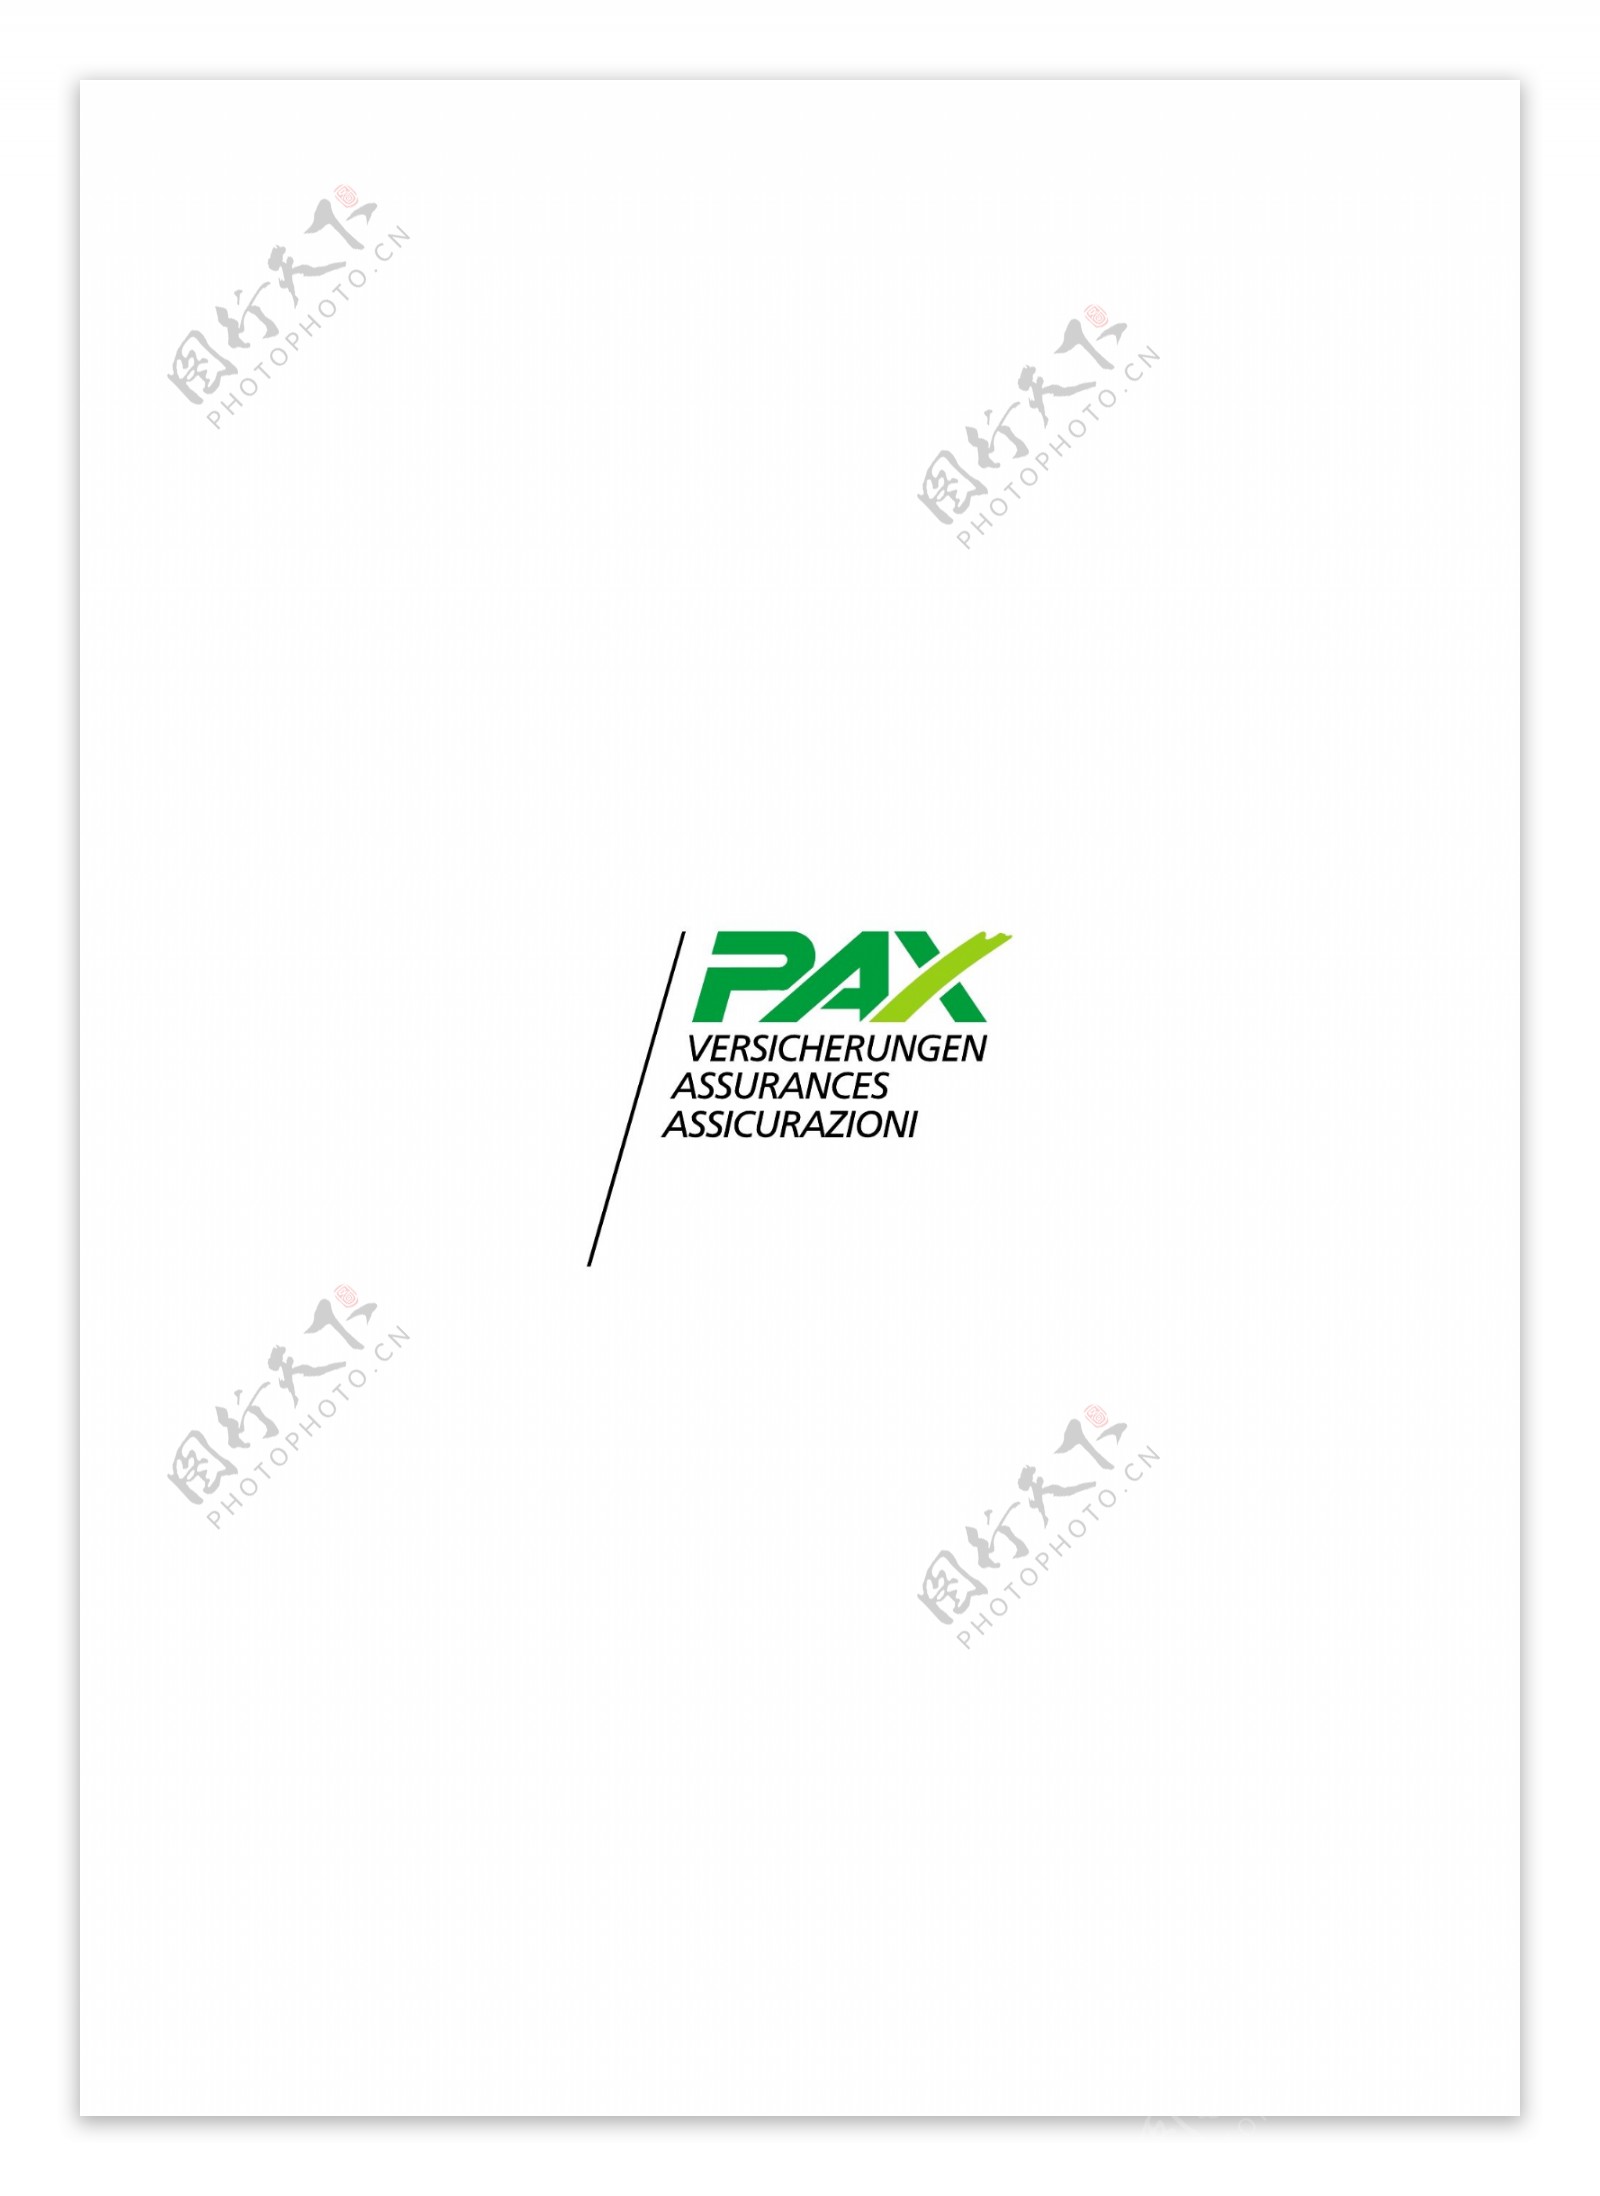 PaxVersicherungenlogo设计欣赏PaxVersicherungen人寿保险标志下载标志设计欣赏